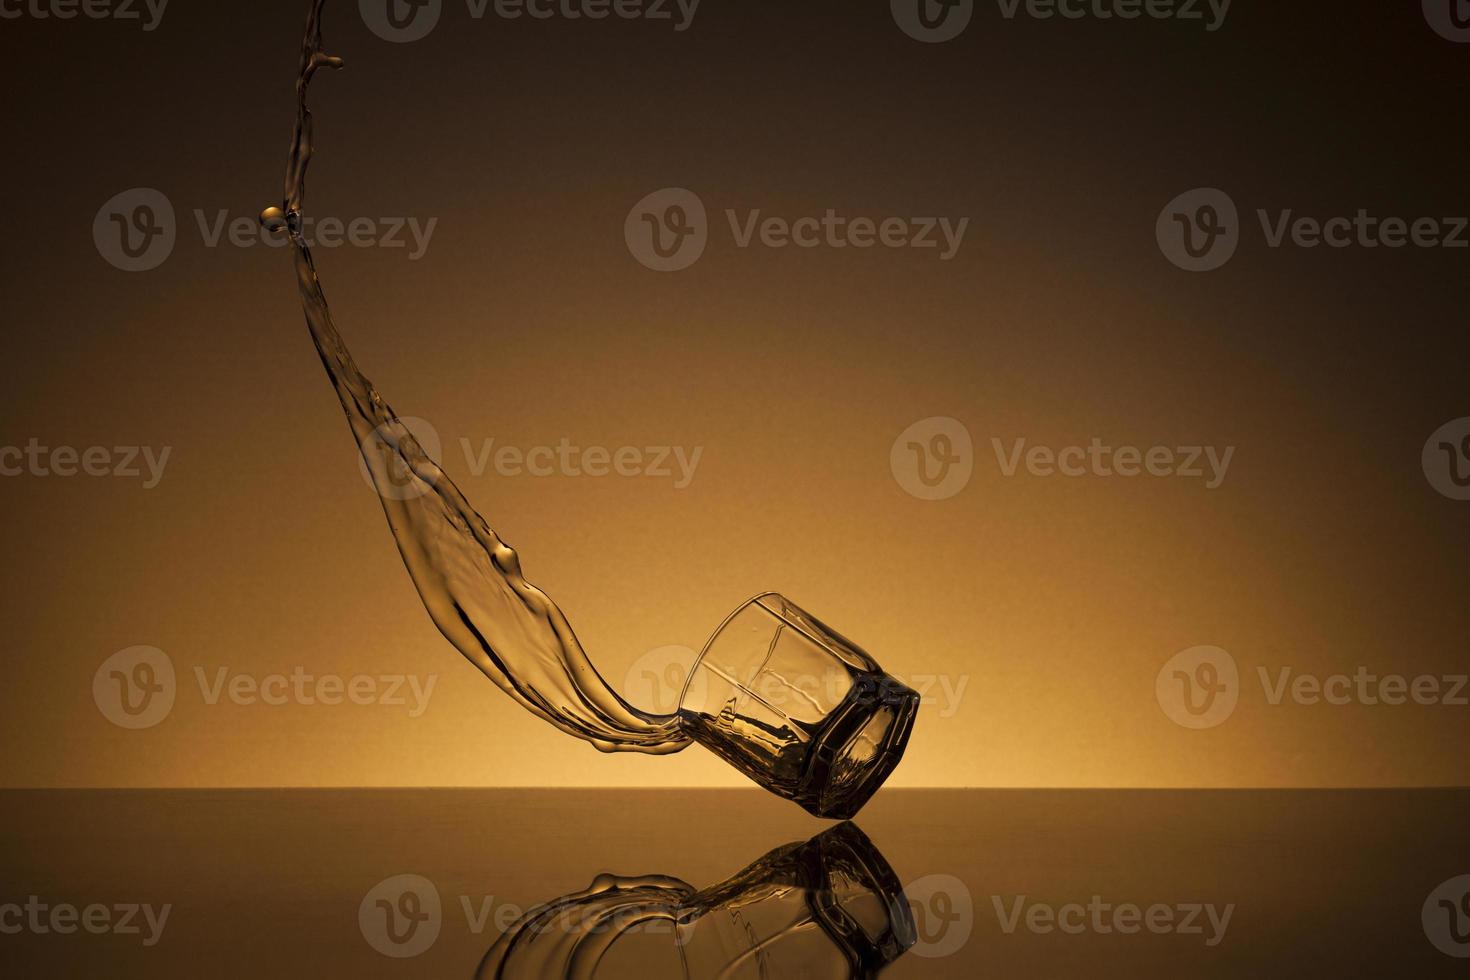 chute verre de alcoolique boisson sur une d'or Contexte photo